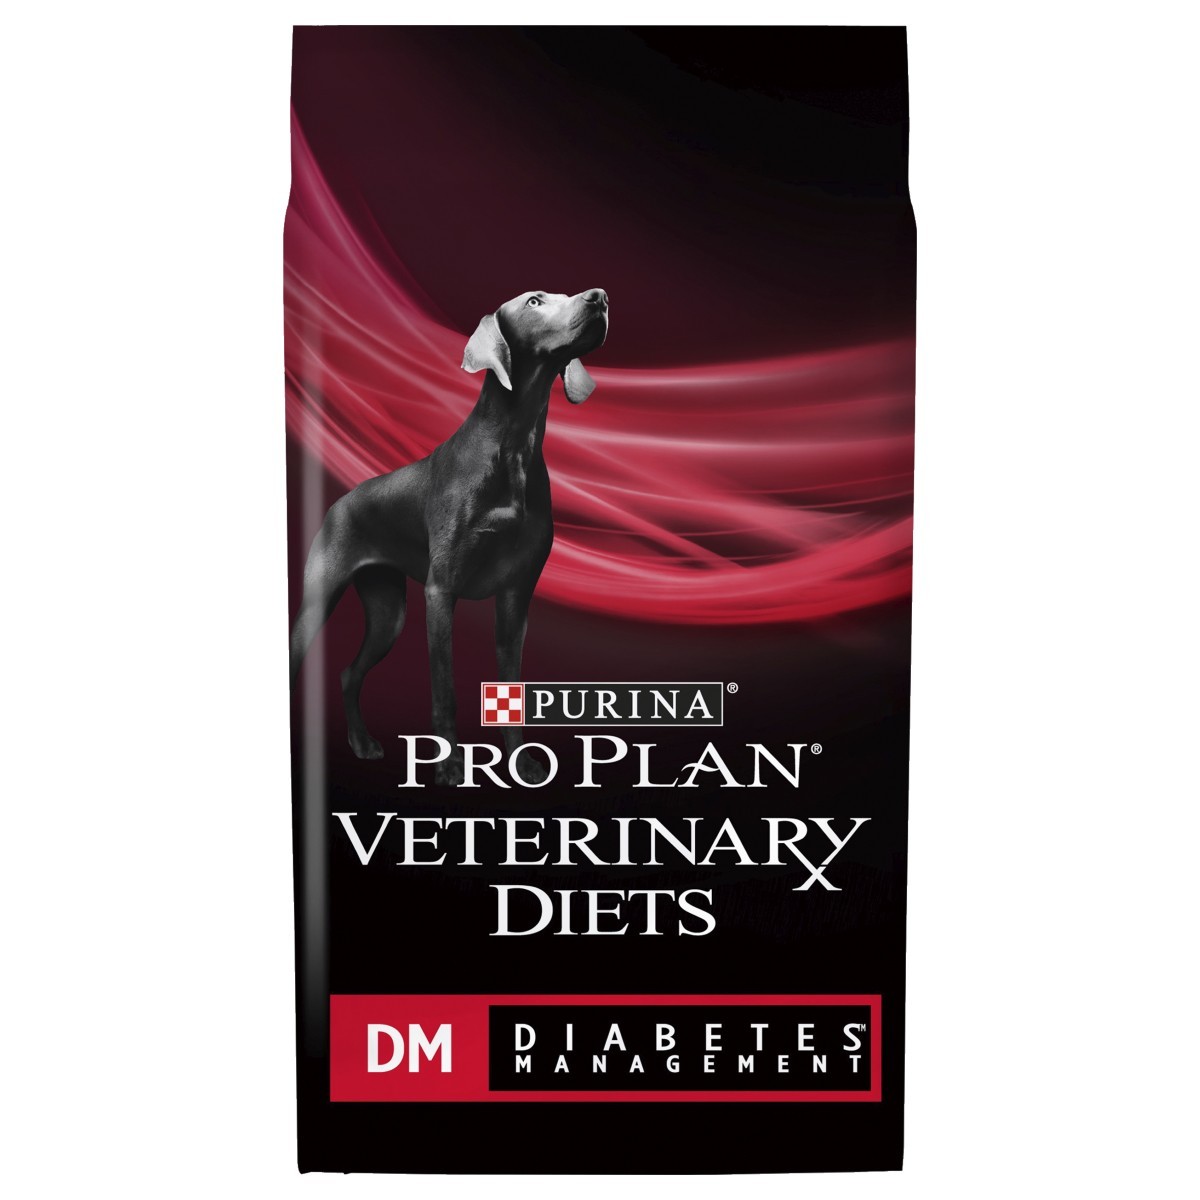 Pro plan diabetes